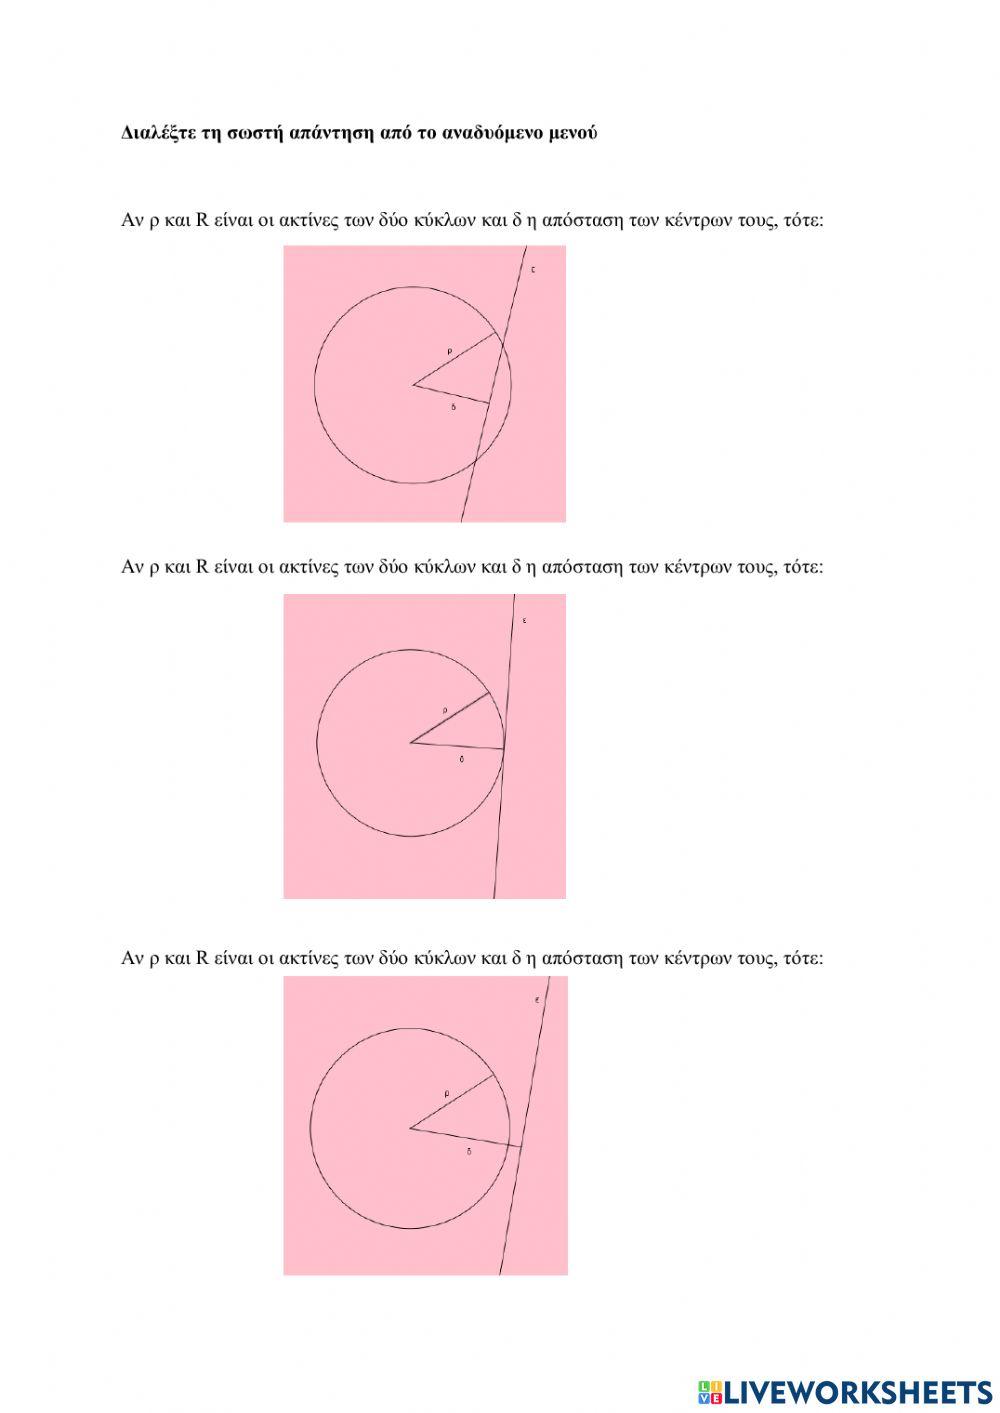 Σχετικές θέσεις ευθείας και κύκλου